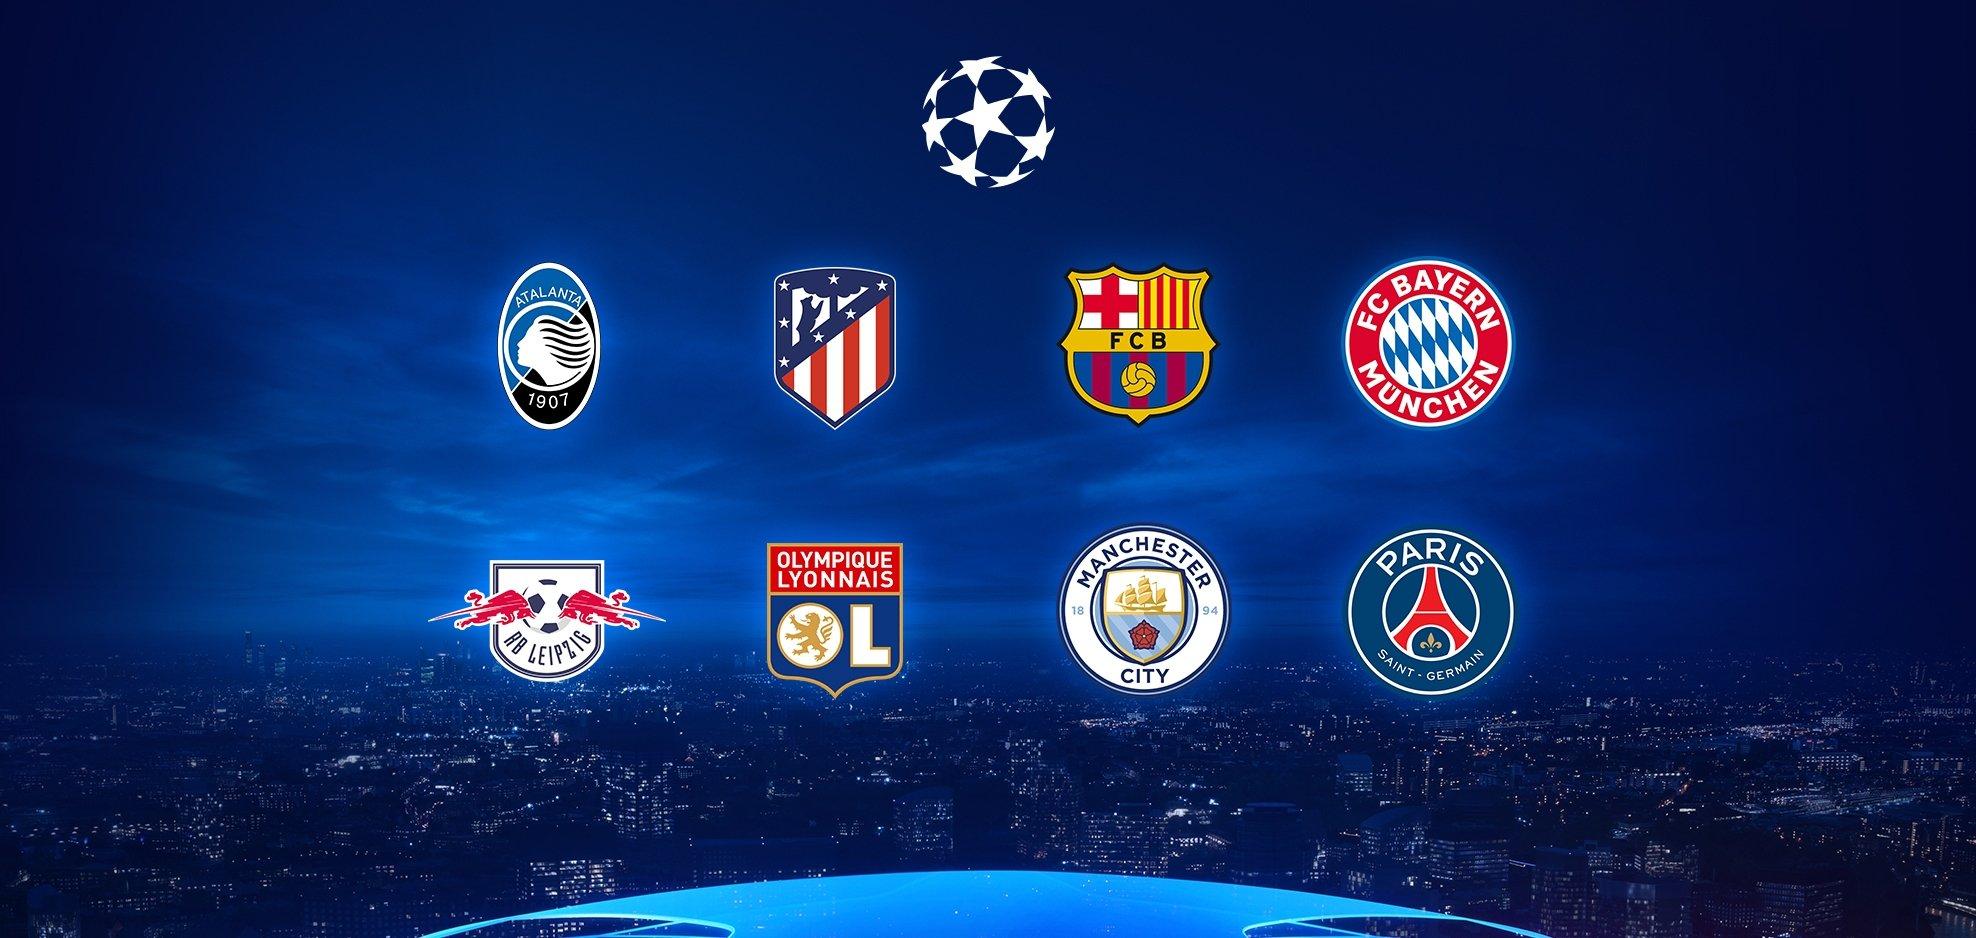 Tứ kết UEFA Champions League 2020: Không có chỗ cho những sai lầm